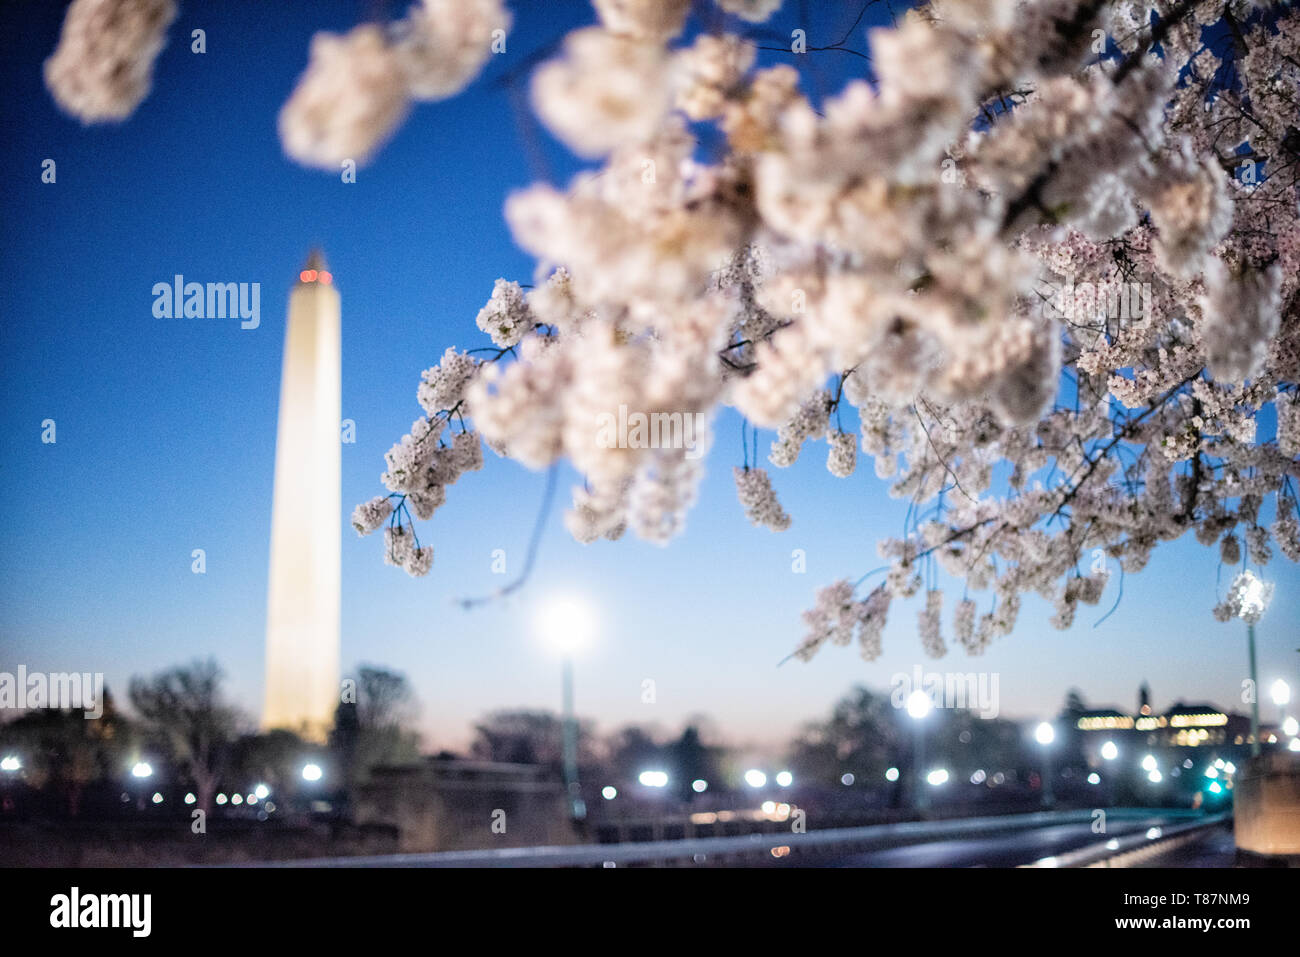 Washington, DC - le Washington Monument et les célèbres cerisiers en fleurs de Washington DC. La floraison annuelle de milliers de cerisiers autour et à proximité des monuments du bassin de Tidal à Washington DC est une attraction touristique majeure. La floraison est seulement éphémère, et le moment précis change d'année en année selon le temps dans les mois qui l'ont conduit. Banque D'Images